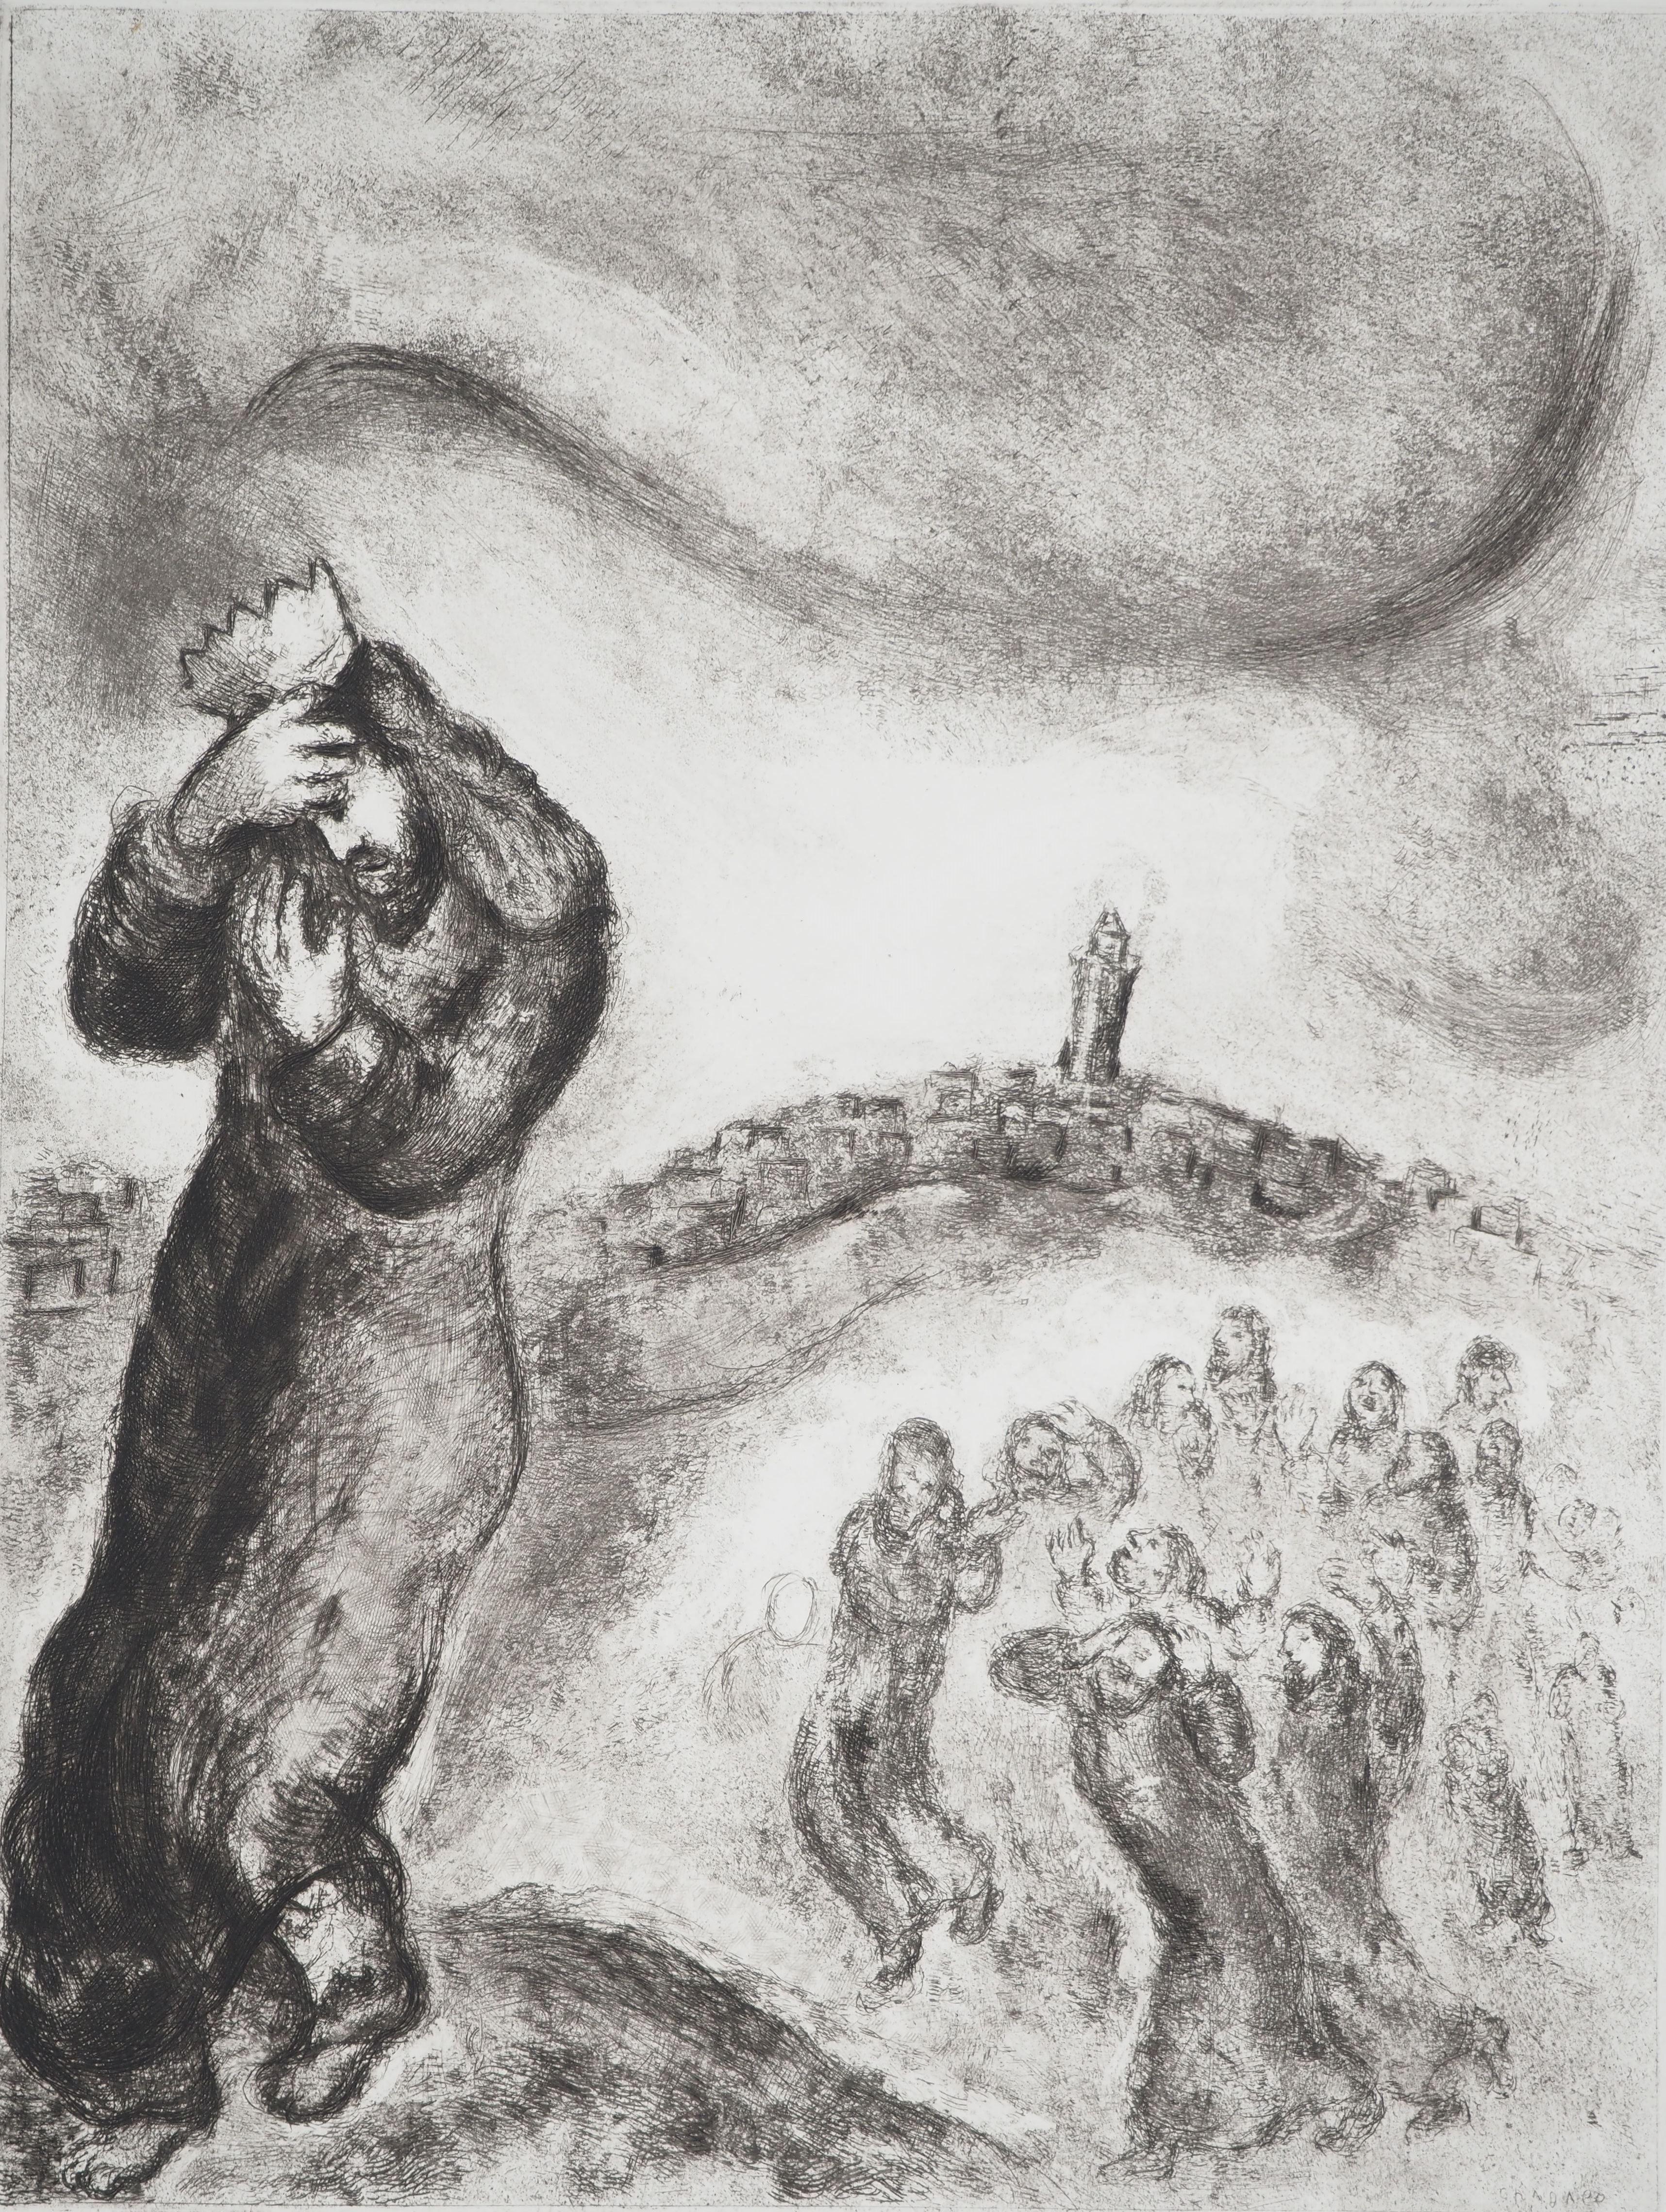 Marc Chagall (1887-1958)
Bibel : David besteigt den Olivenberg (David montant la colline des oliviers), 1939

Original-Radierung
Gedruckte Unterschrift auf der Platte
Auf Montval Vellum, 44 x 33,5 cm (ca. 17,3 x 13,1 inch)

INFORMATION: